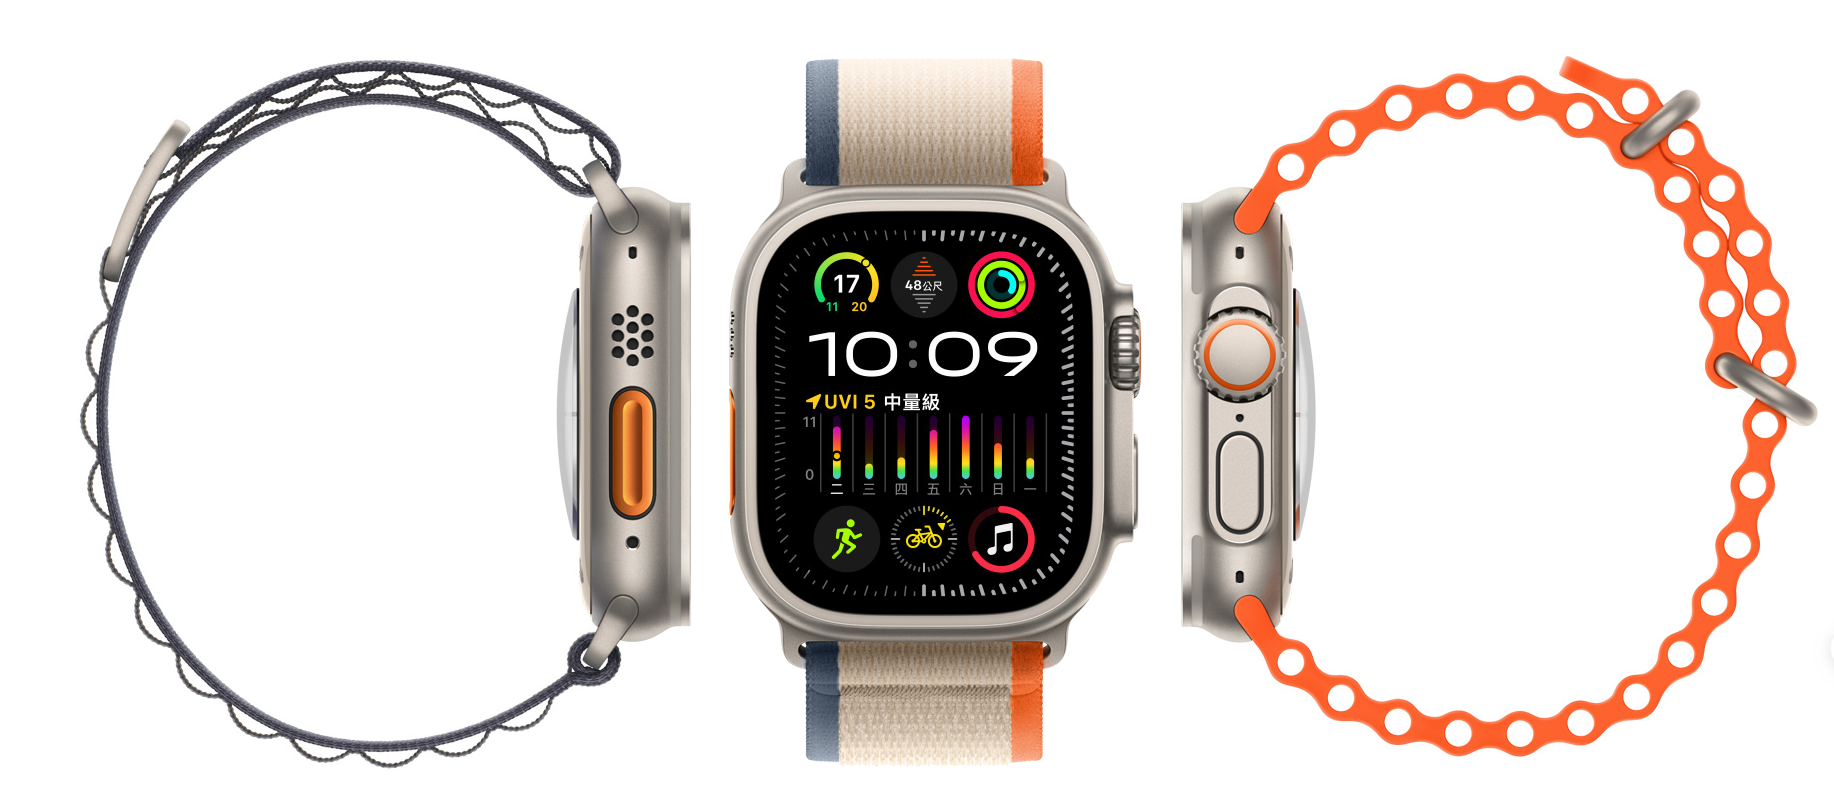 捲入專利官司 蘋果21日起在美停售兩款Apple Watch